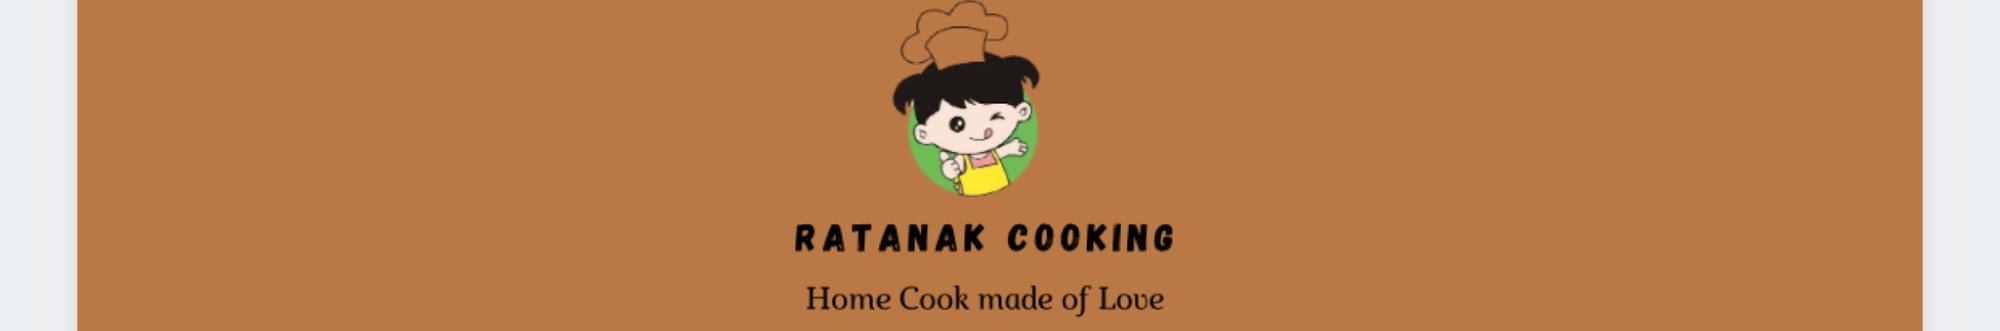 Ratanak Cooking